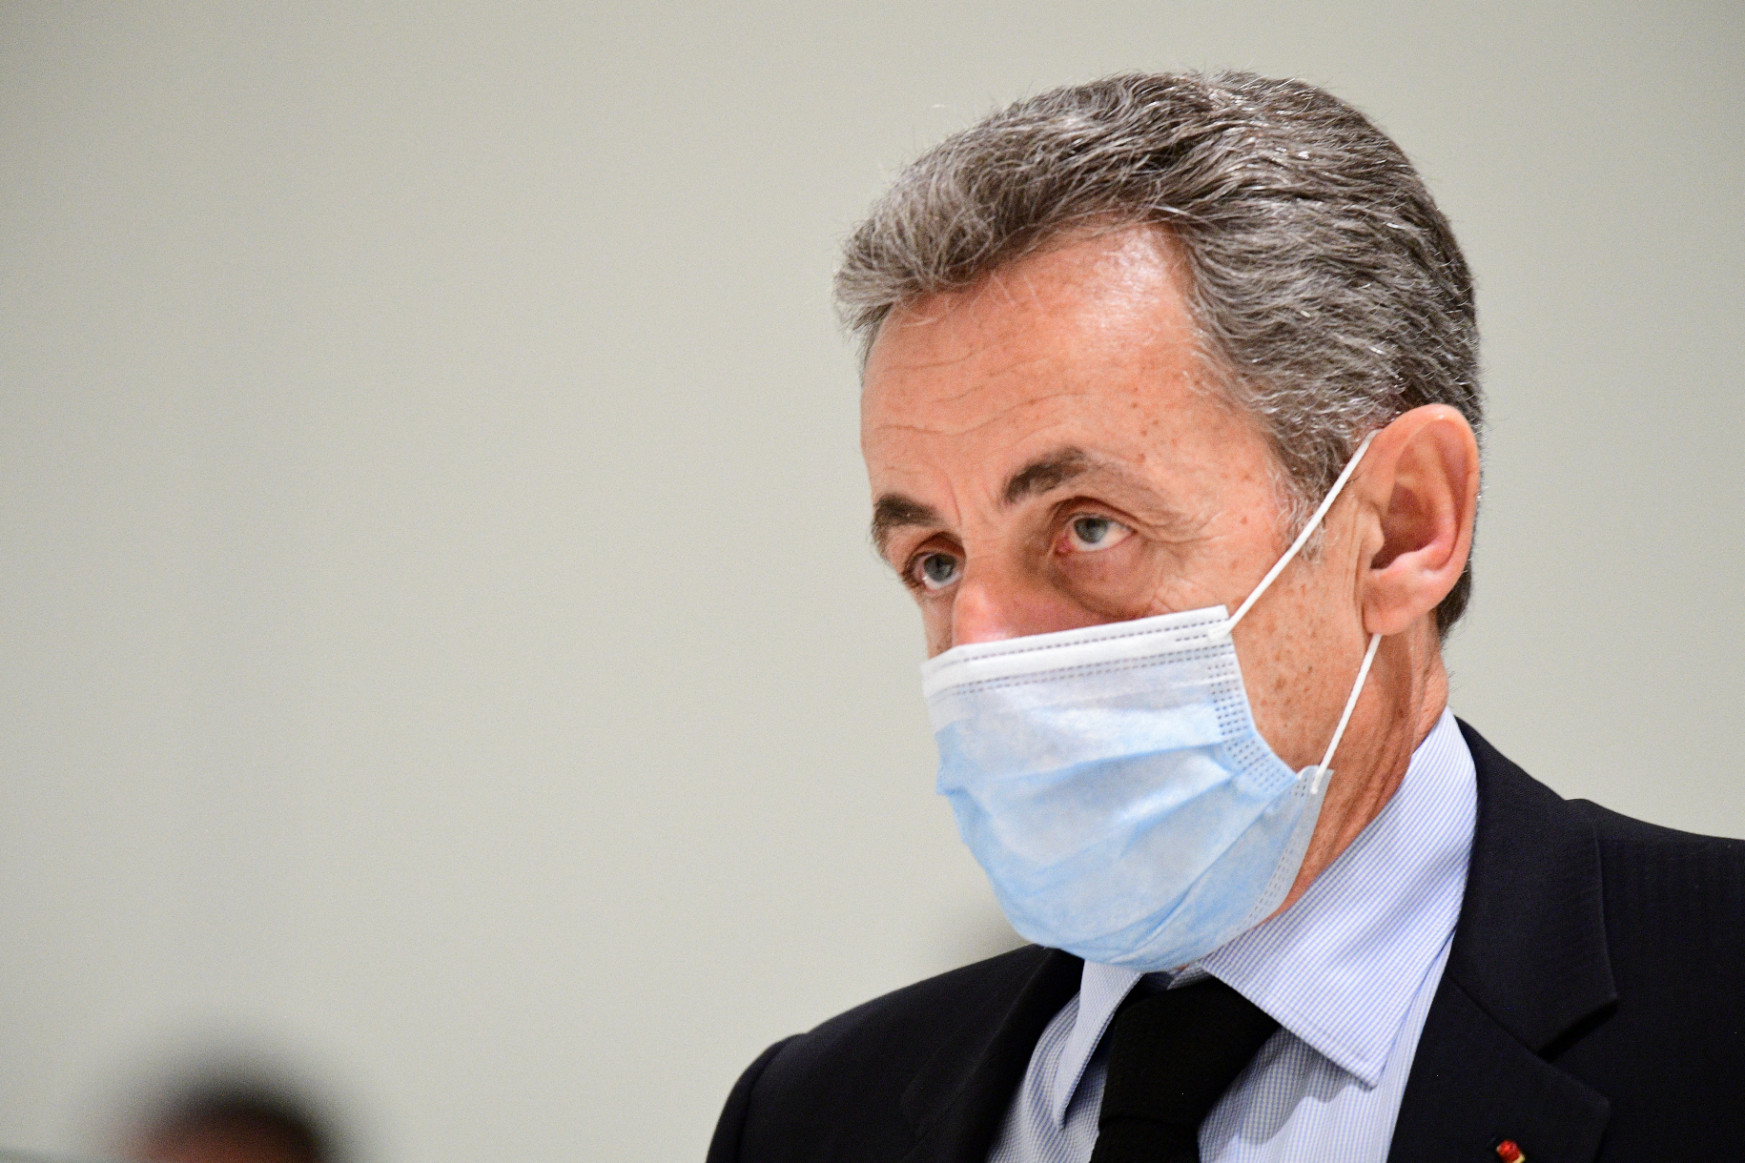 Három év börtönre ítélték Sarkozyt, ebből egy év letöltendő, két év felfüggesztett